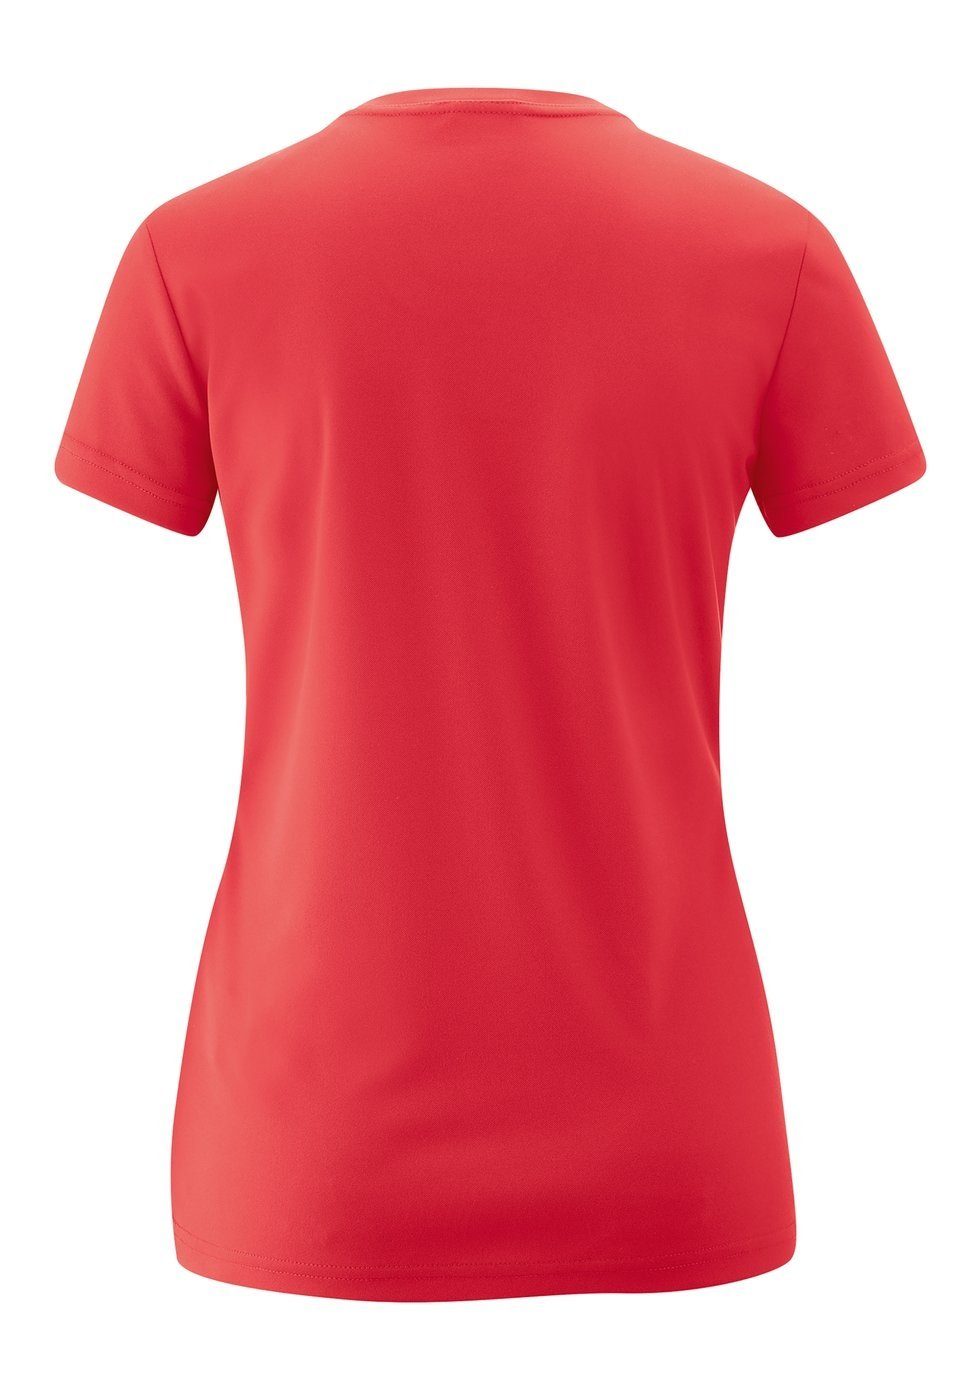 T-Shirt Maier Laufshirt hibiscus Sports Da. 252310 Trudy Maier Sports